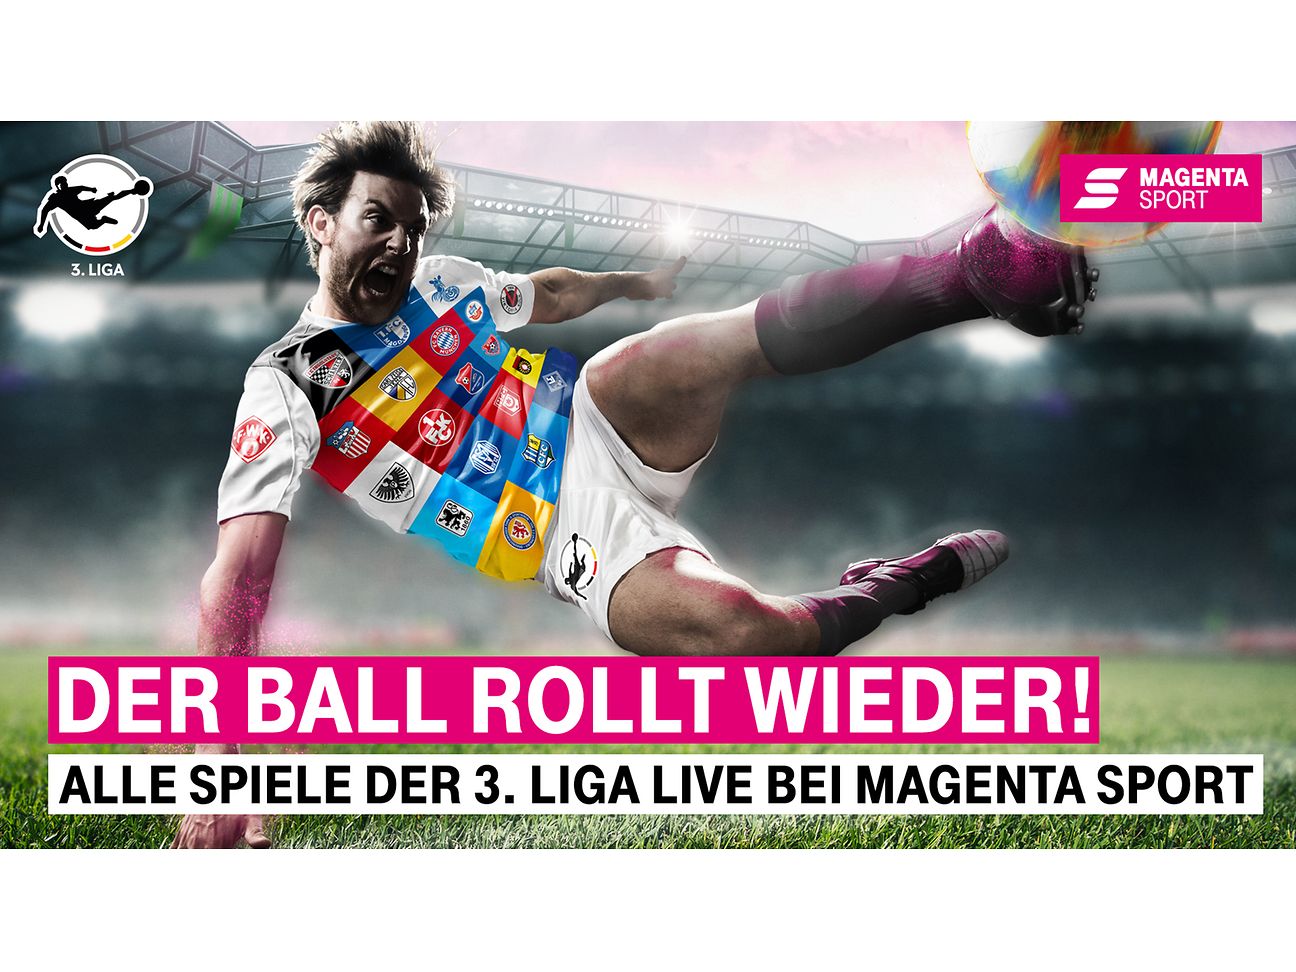 MagentaSport zeigt jetzt auch dritte Liga wieder live Deutsche Telekom